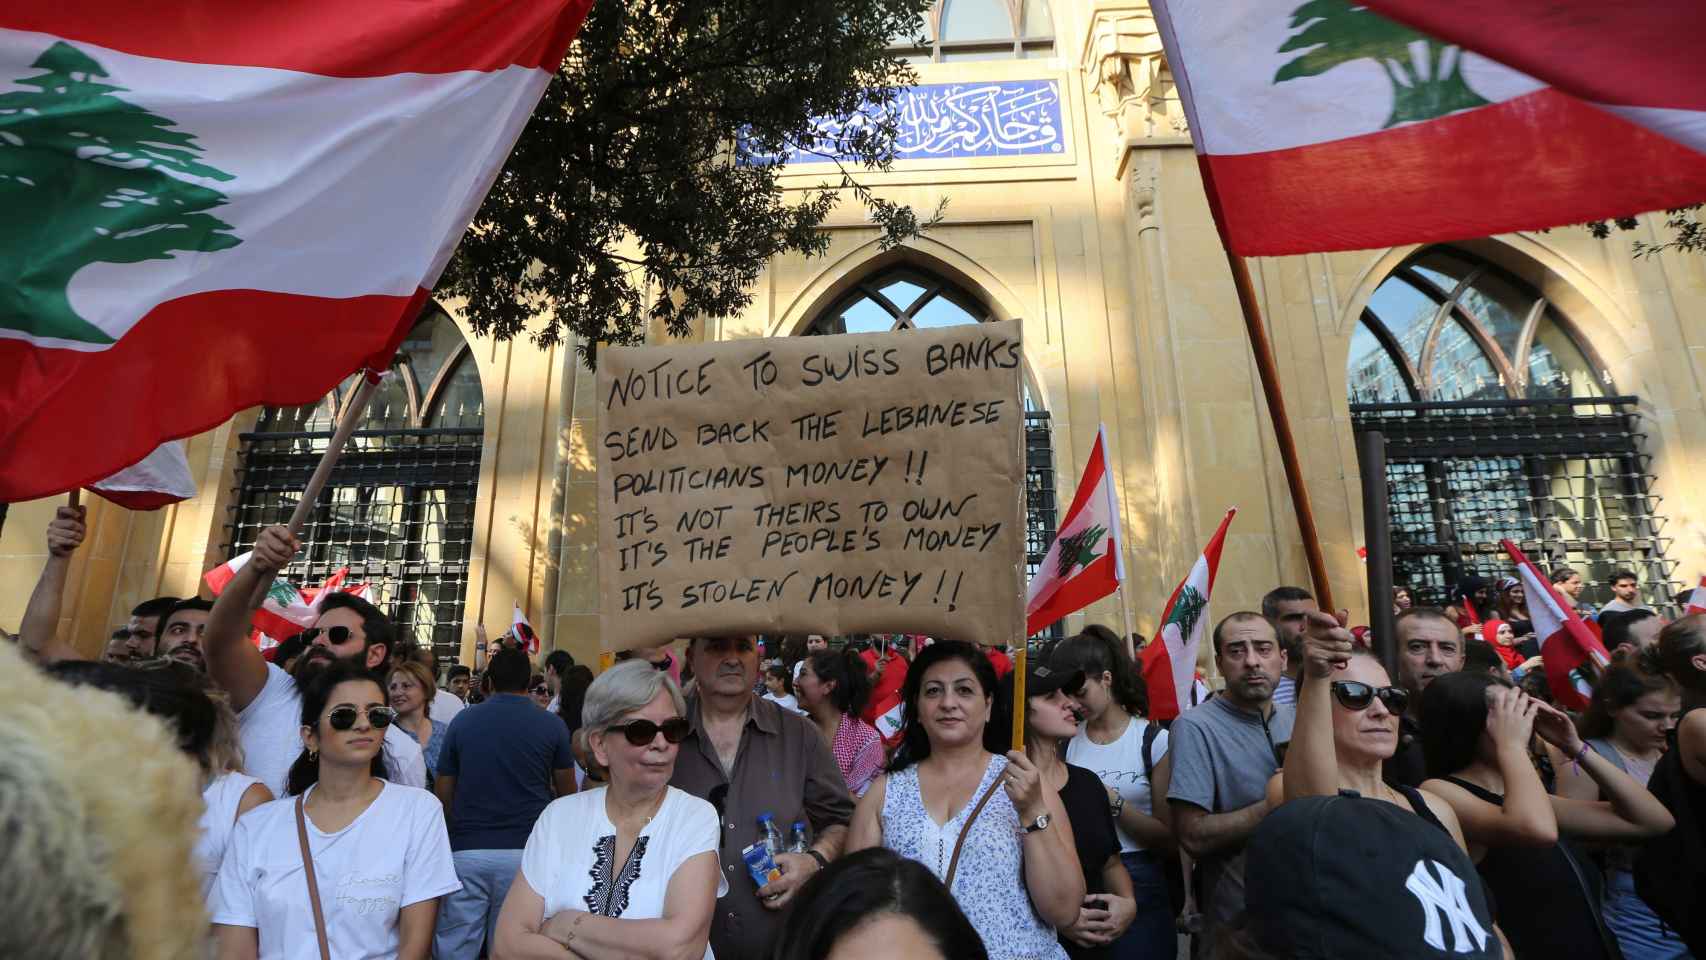 Una manifestante porta un cartel en el que denuncia la corrupción con el mensaje: Aviso a los bancos suizos: devuelvan el dinero de los políticos libaneses. No es suyo, es el dinero de la gente. Es dinero robado.